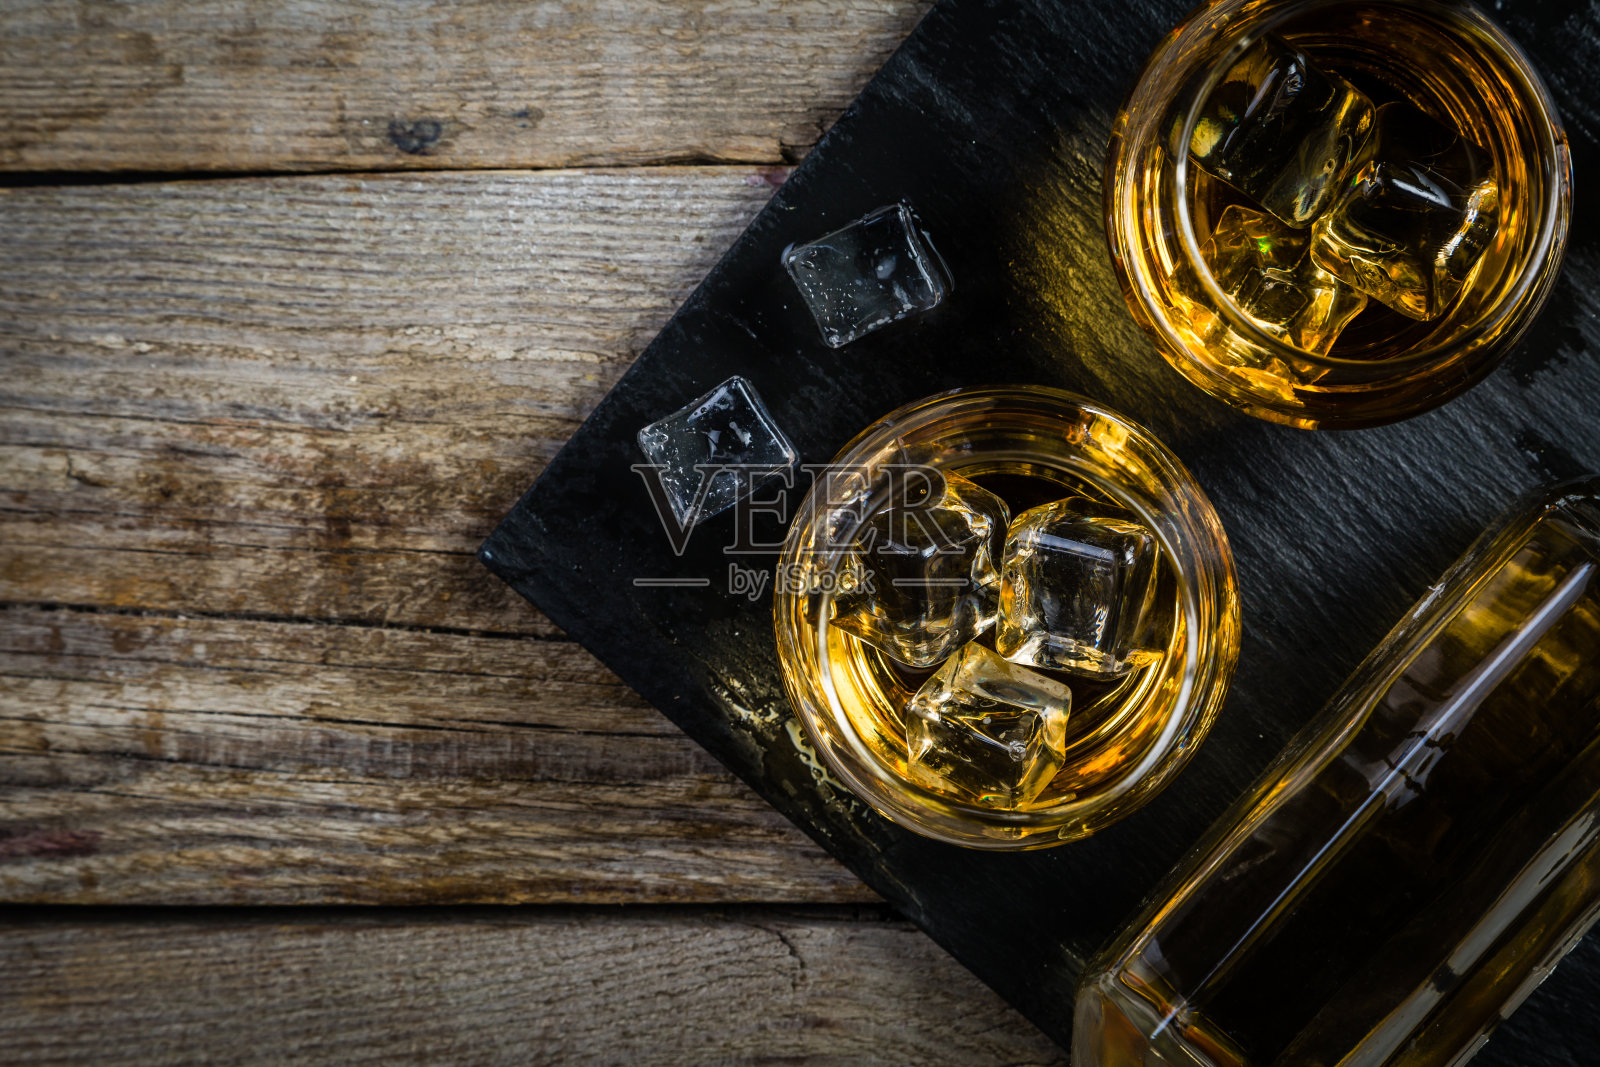 玻璃杯中加冰的威士忌照片摄影图片